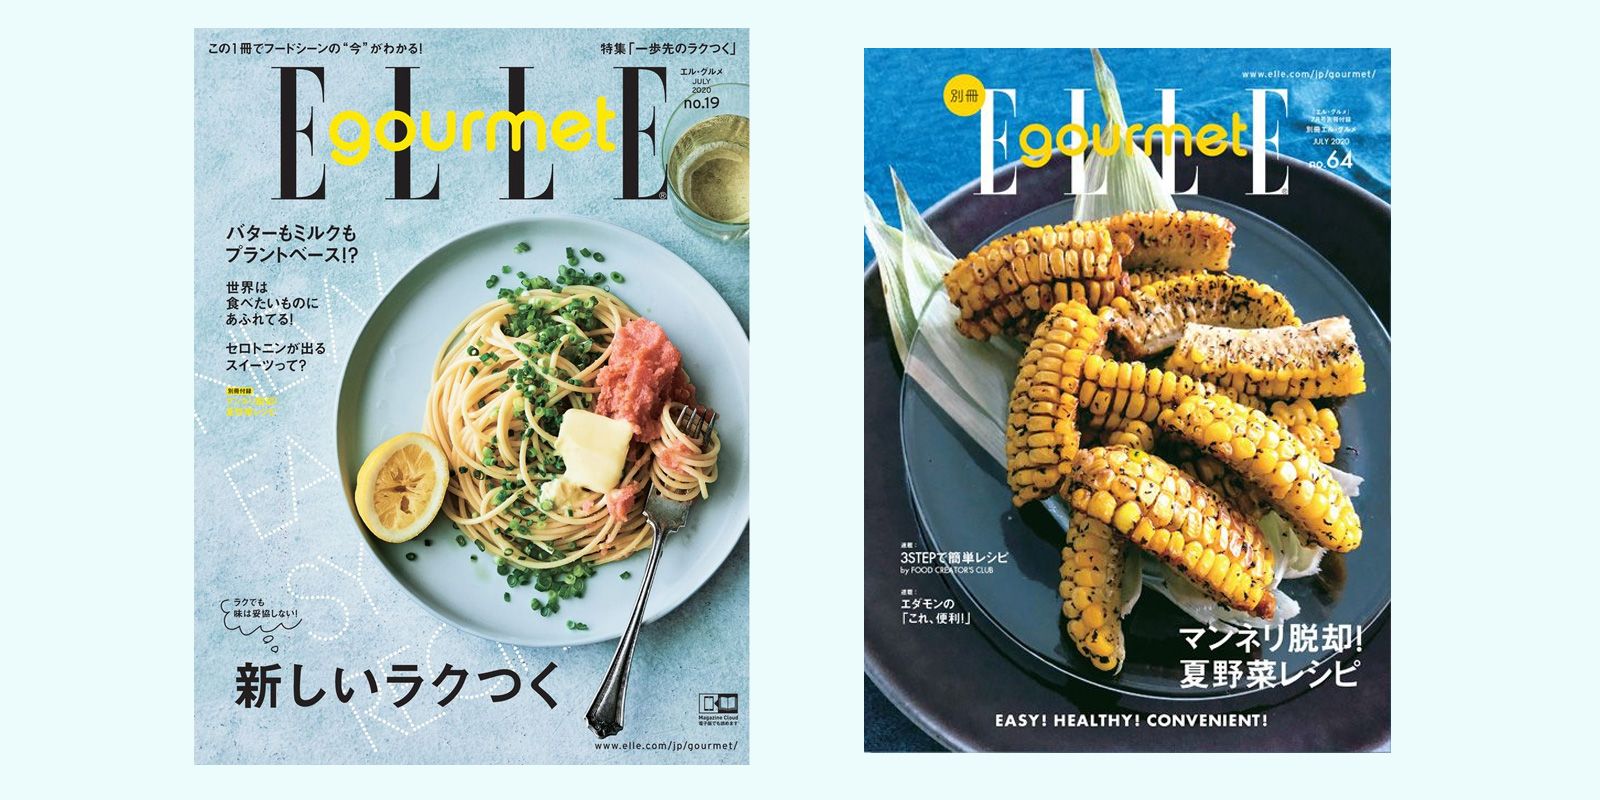 ビンテージ☆45年前の米国 旅とグルメの写真雑誌“Gourmet” 通販